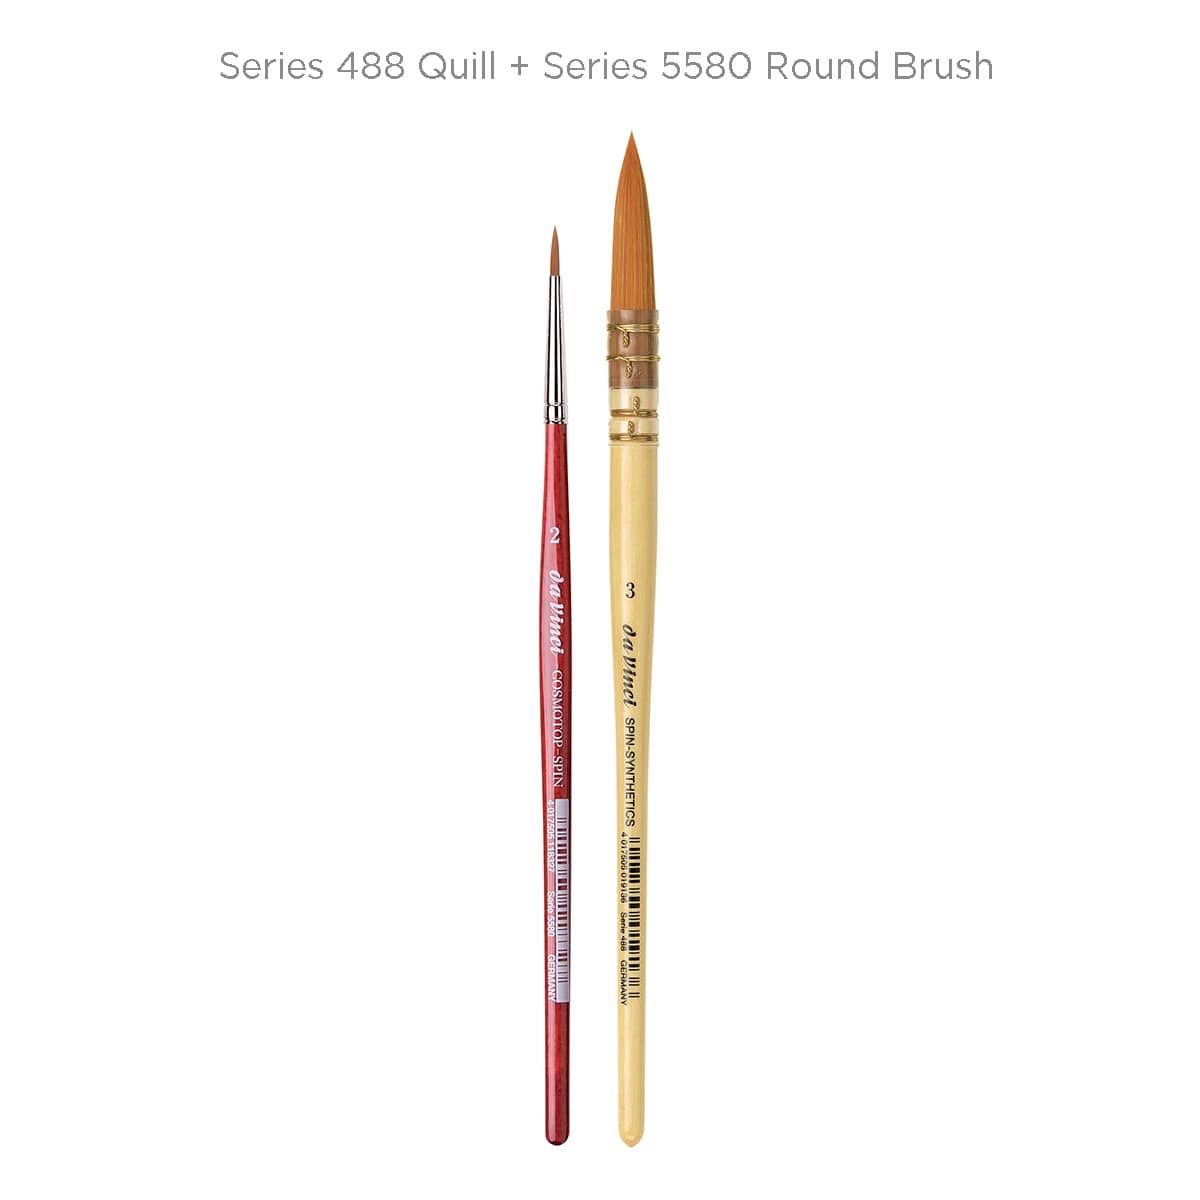 Series 488 Quill + Series 5580 Round Brush